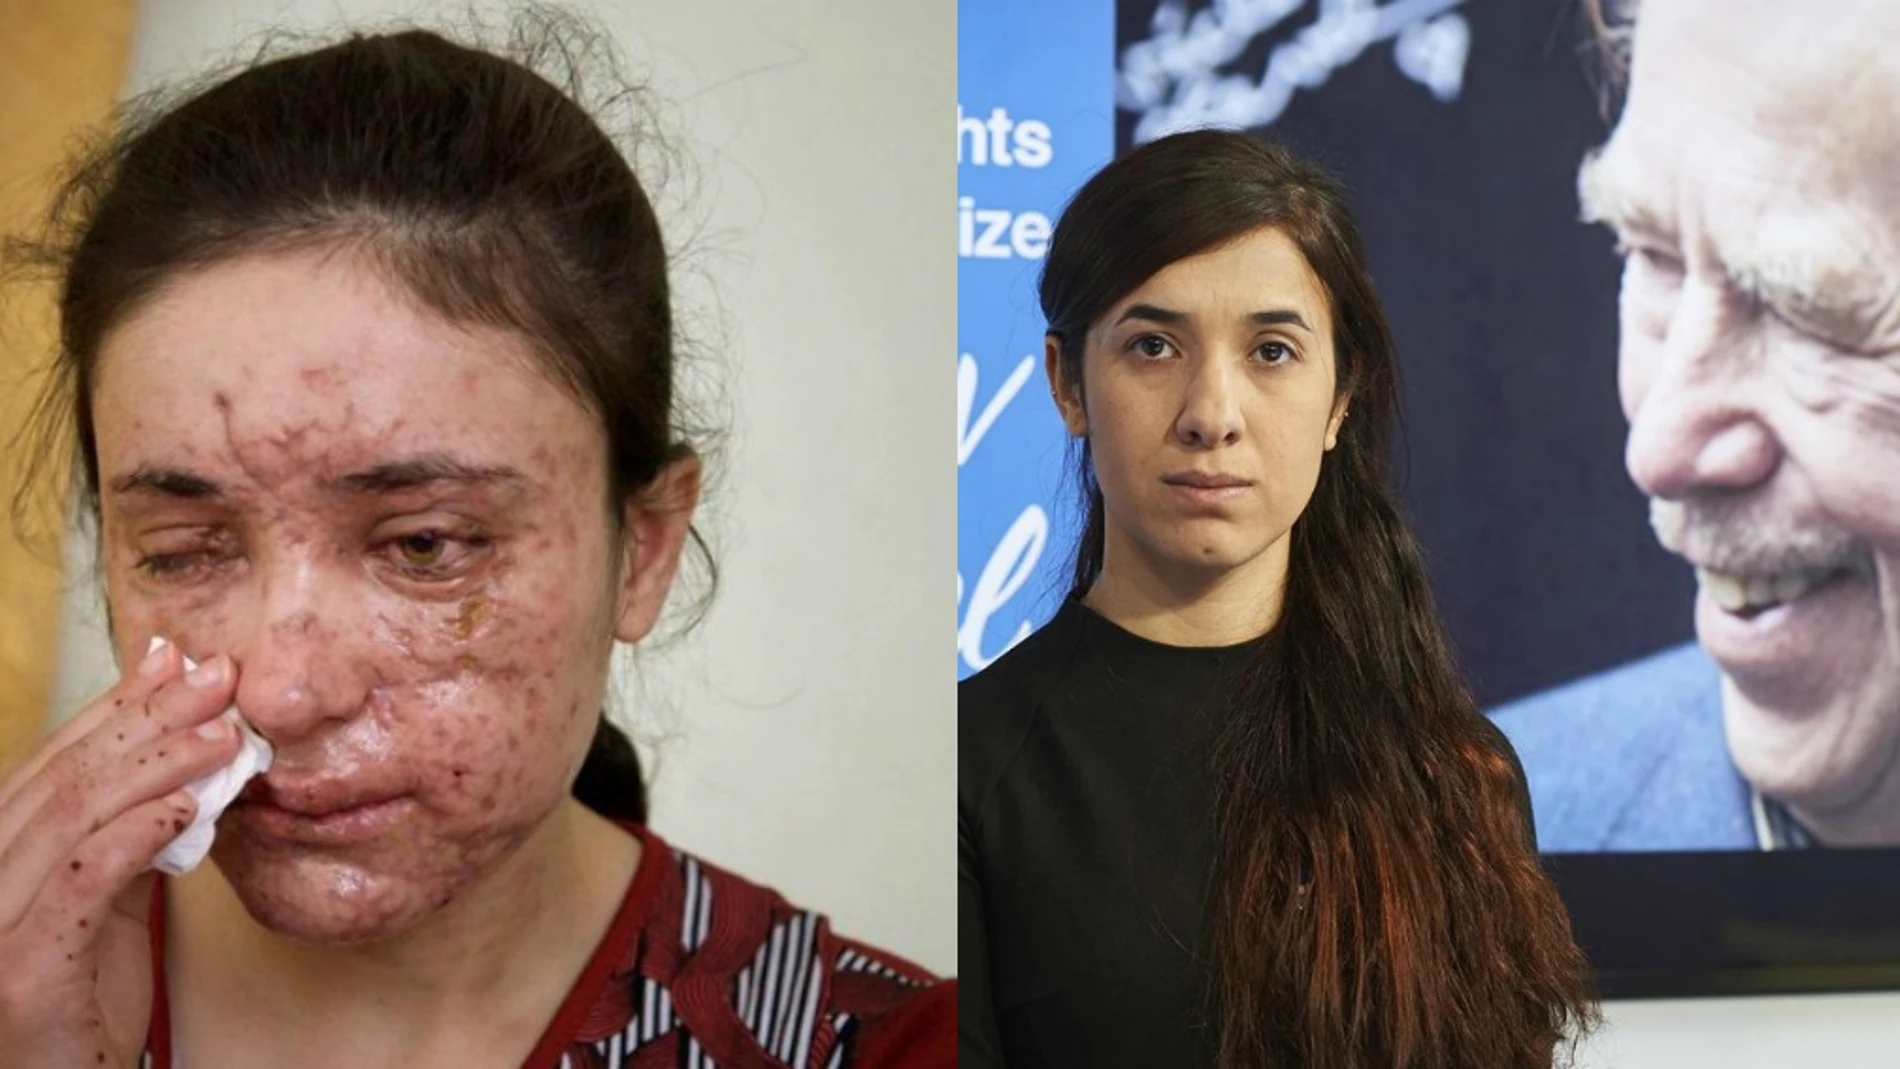 Dos víctimas del grupo terrorista Daesh, premiadas